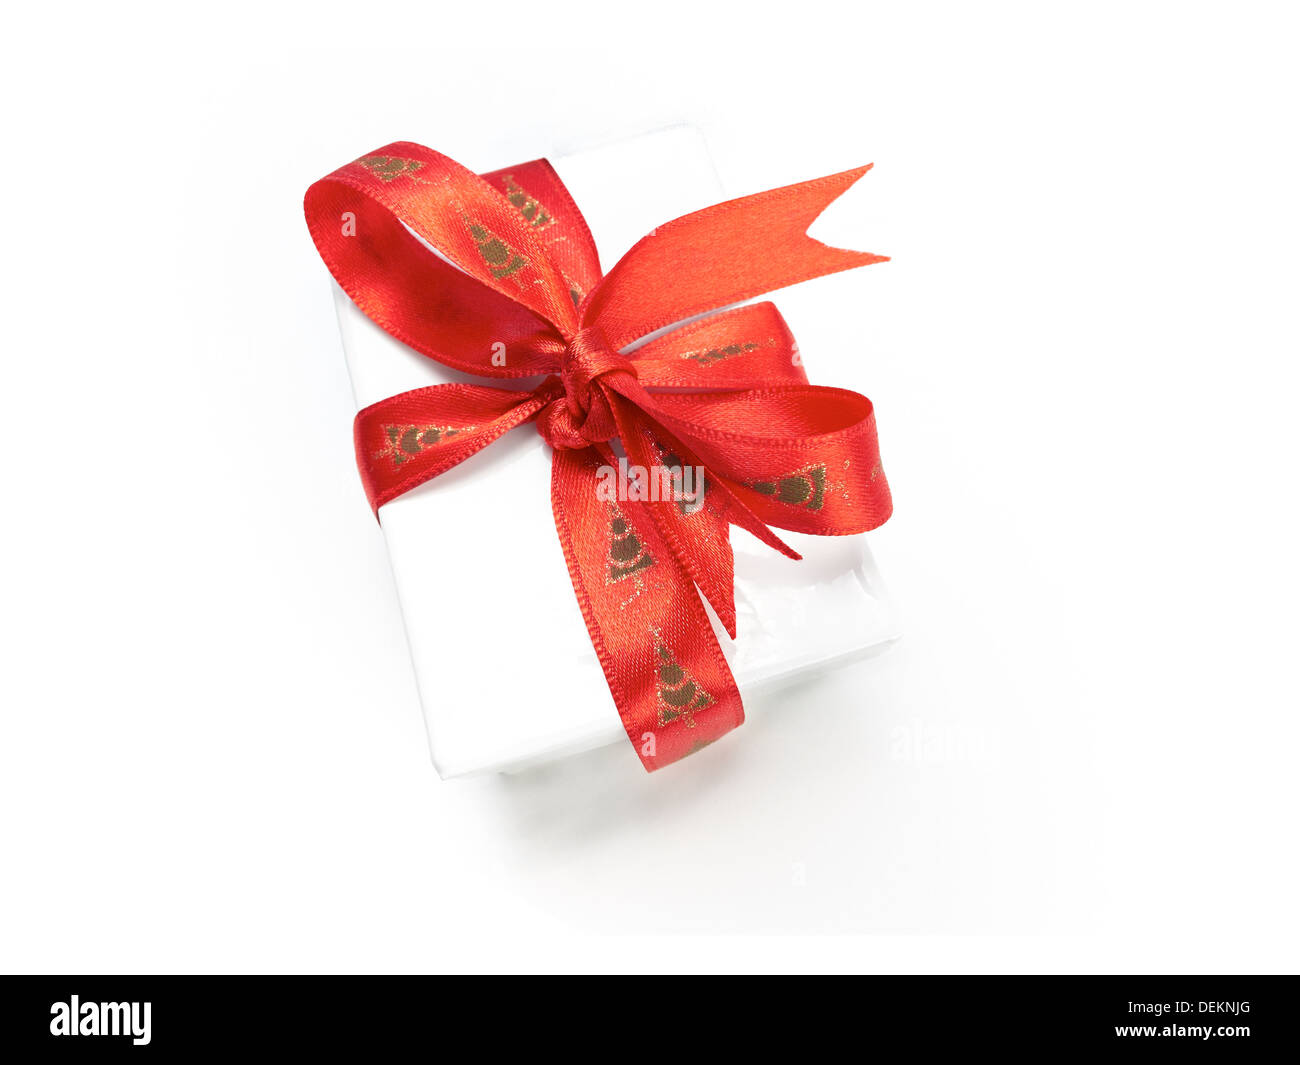 Bogen Sie eine verpackte Weihnachtsgeschenk mit einem farbenfrohen roten Band auf einem weißen Hintergrund. Stockfoto